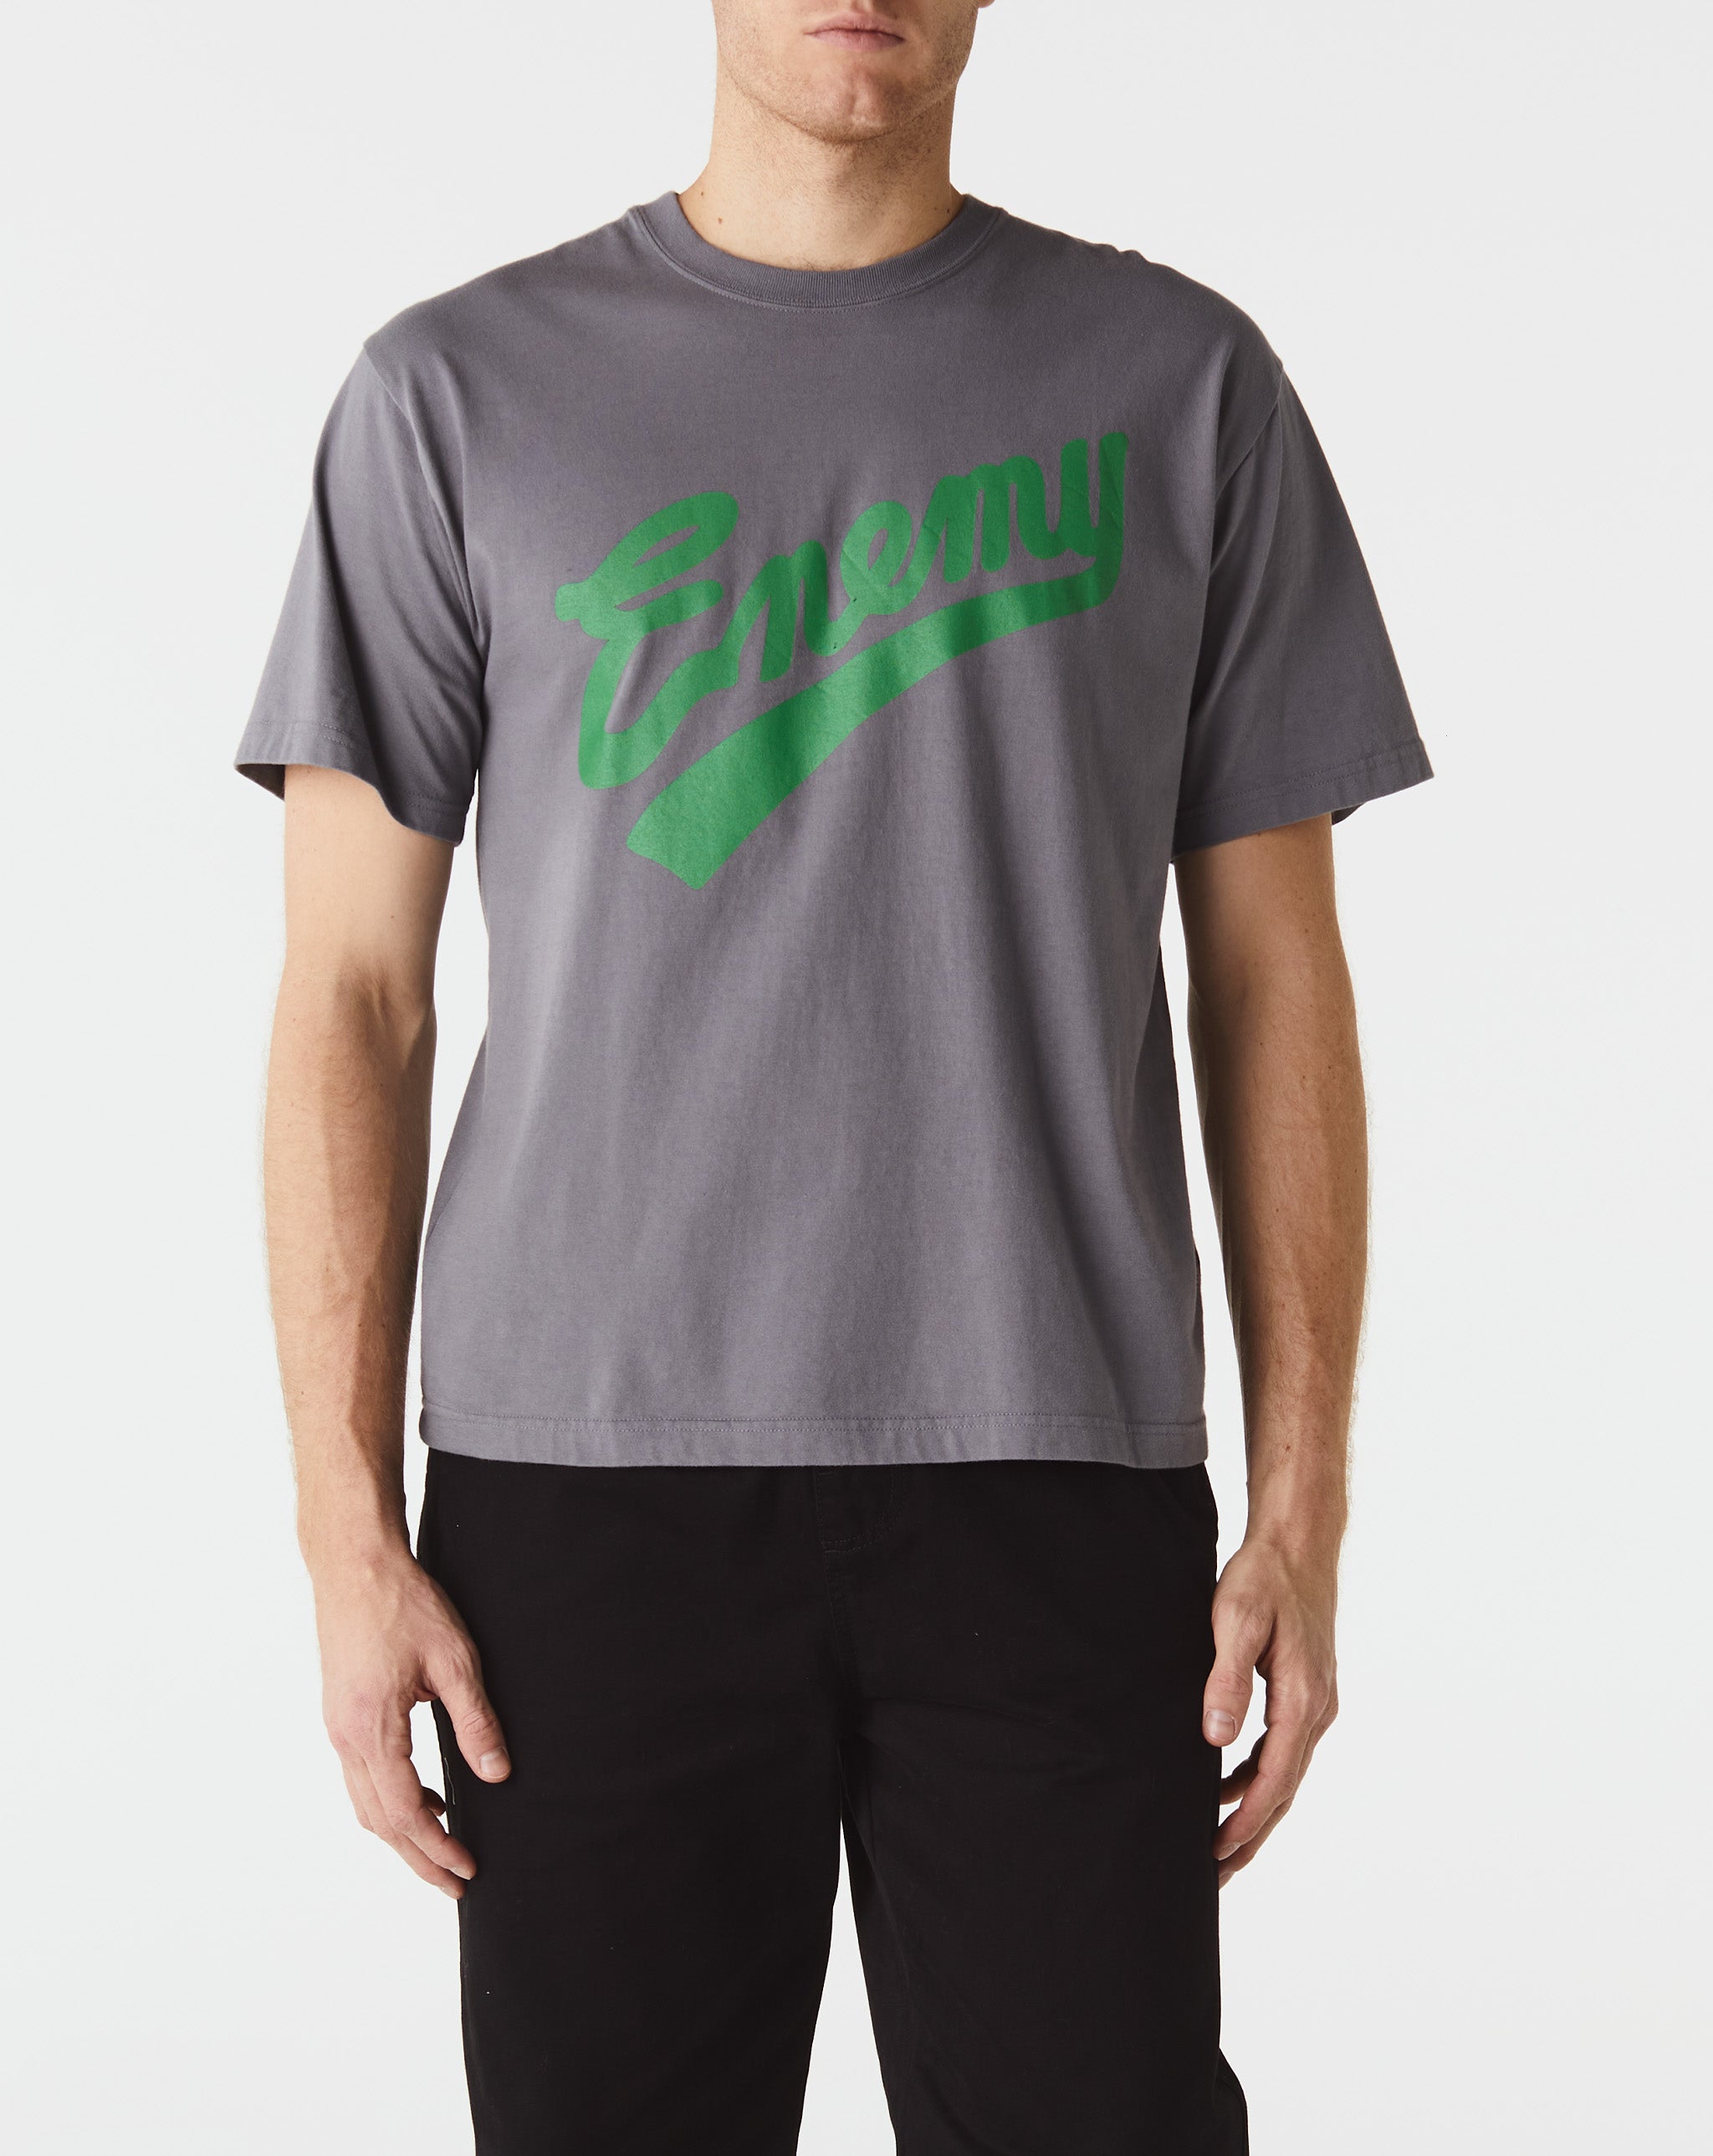 Neighborhood Public Enemy x T-Shirt SS-1  - Cheap Urlfreeze Jordan outlet